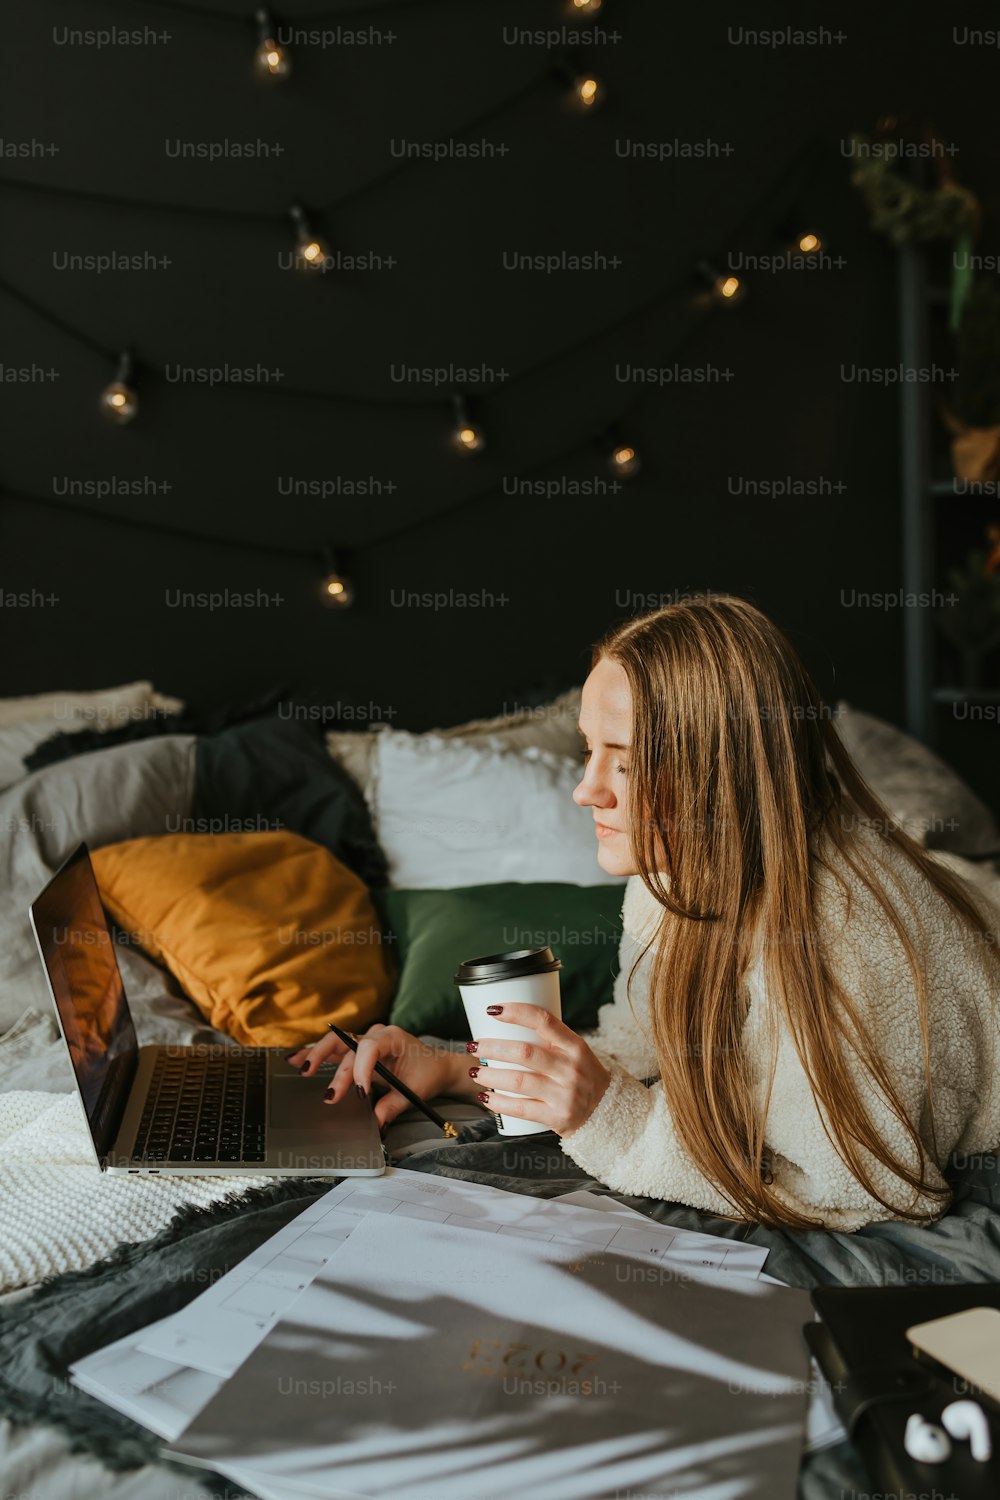 Eine Frau sitzt auf einem Bett und hält eine Tasse Kaffee in der Hand